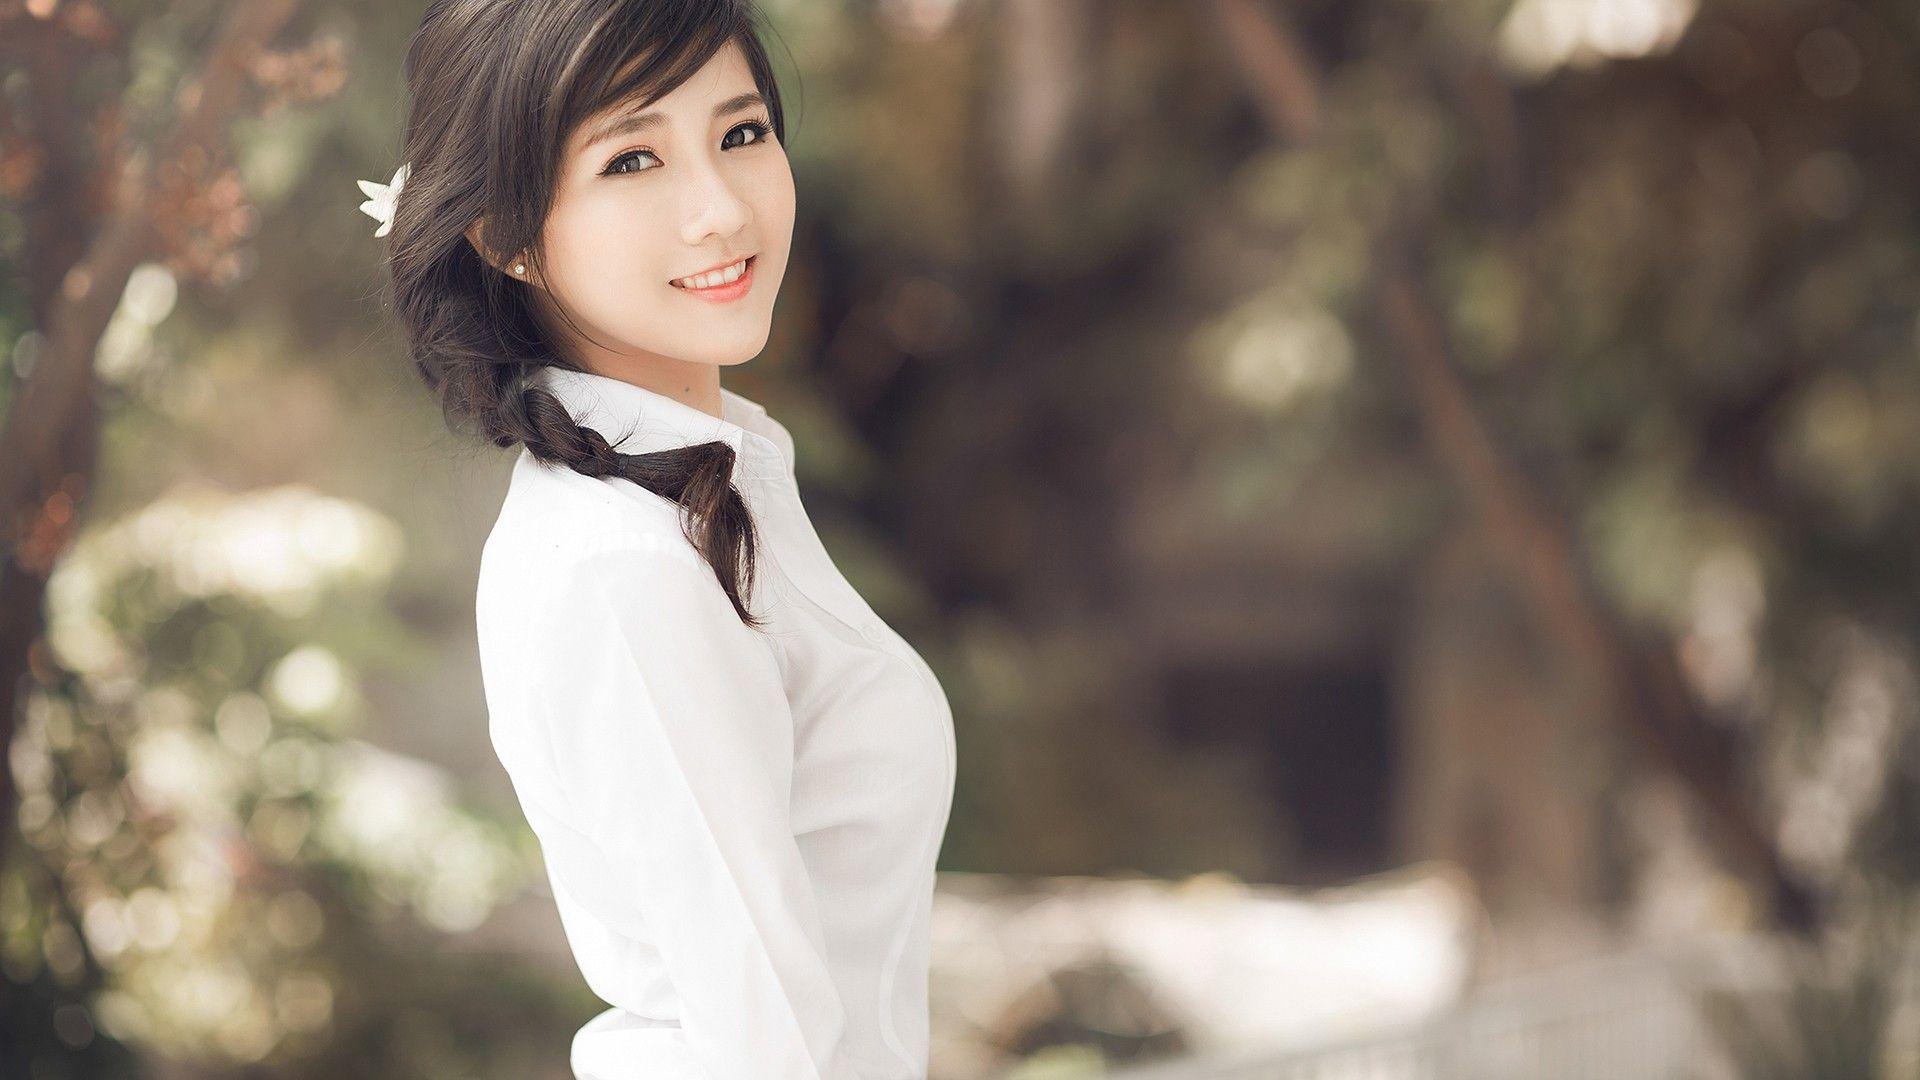 Beautiful Asian Girl Wallpaper, Amazing Beautiful Asian Girl